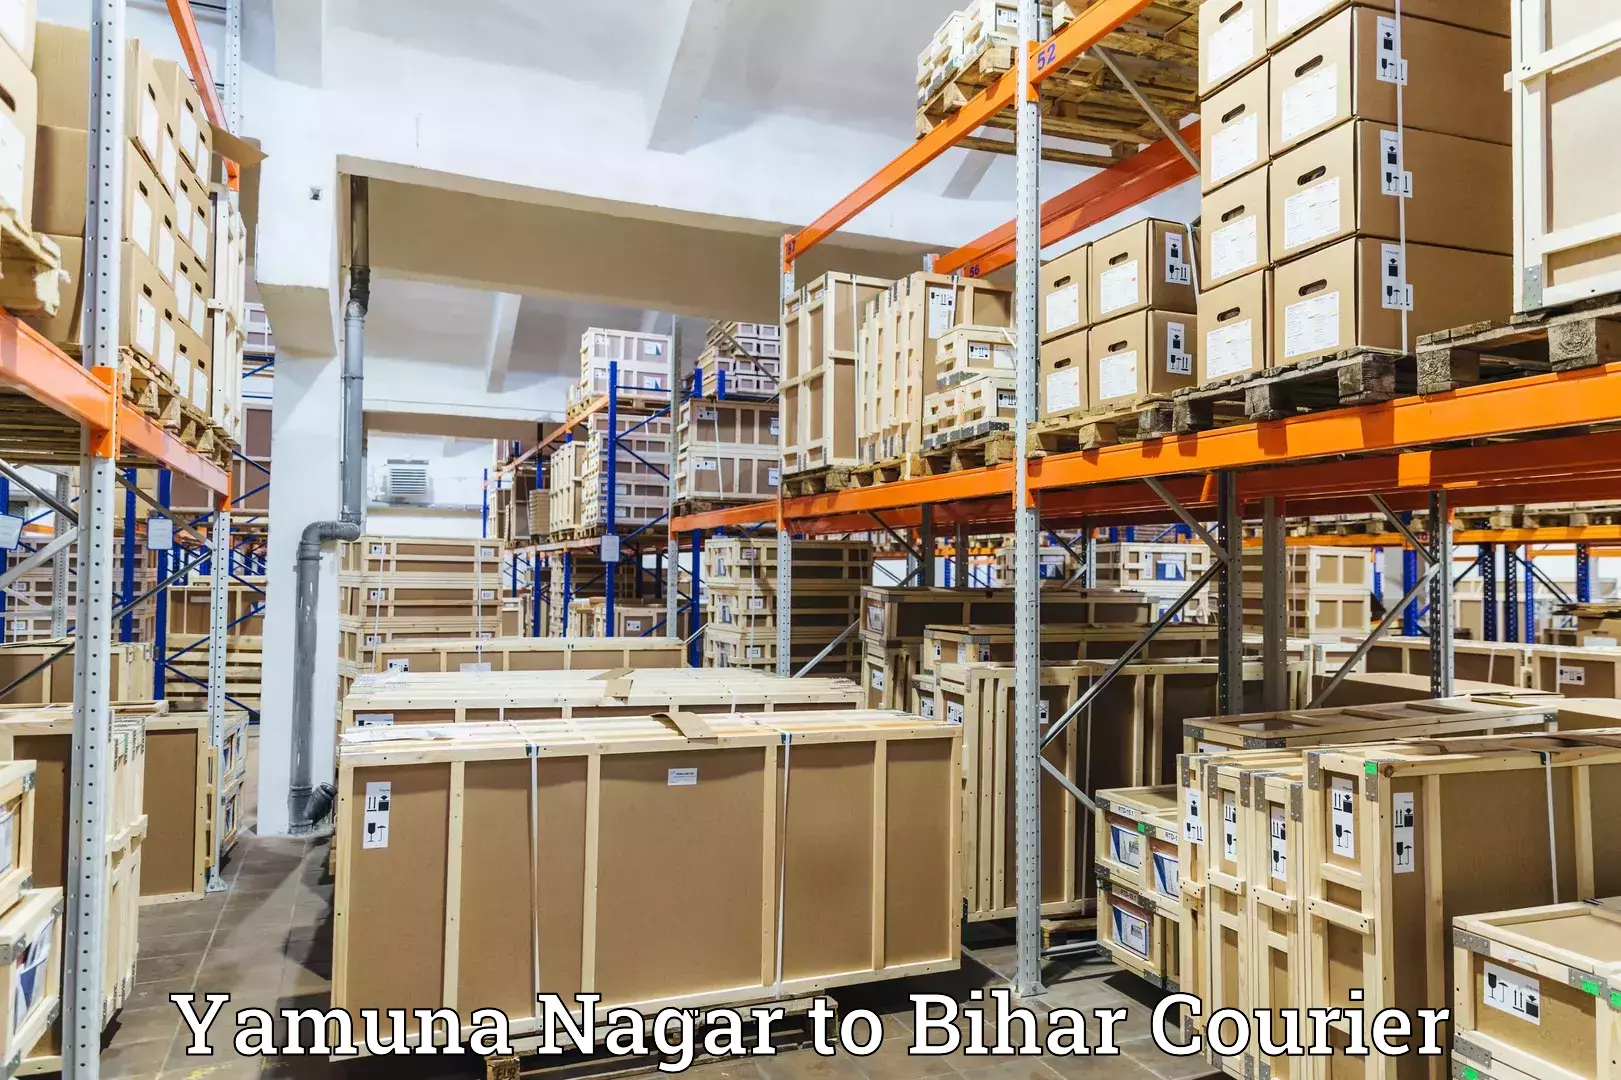 Efficient order fulfillment Yamuna Nagar to Bihar